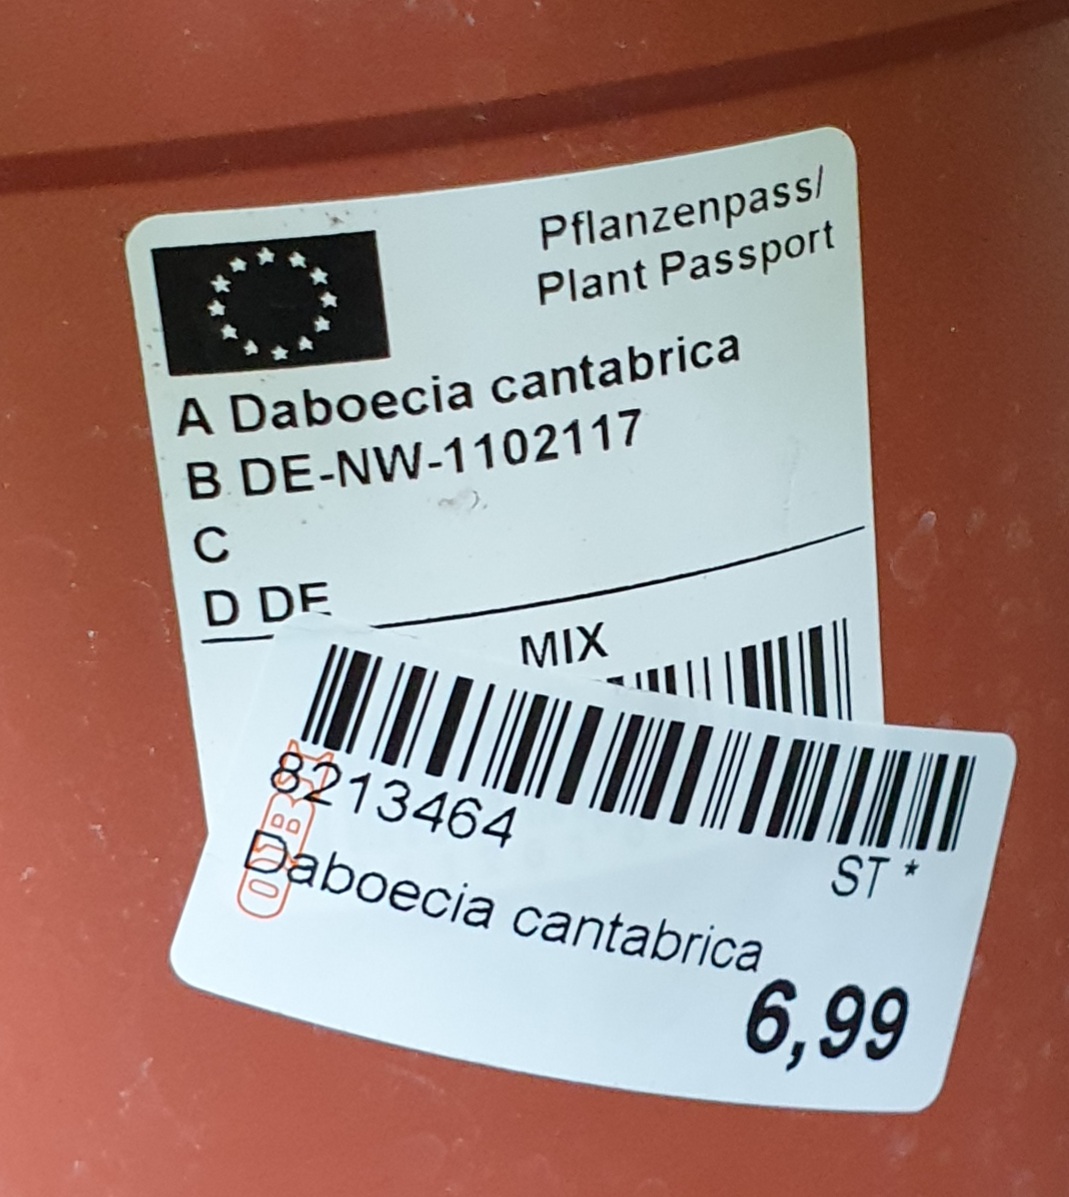 Irische Heide Daboecia Cantabrica weiss pink Schild